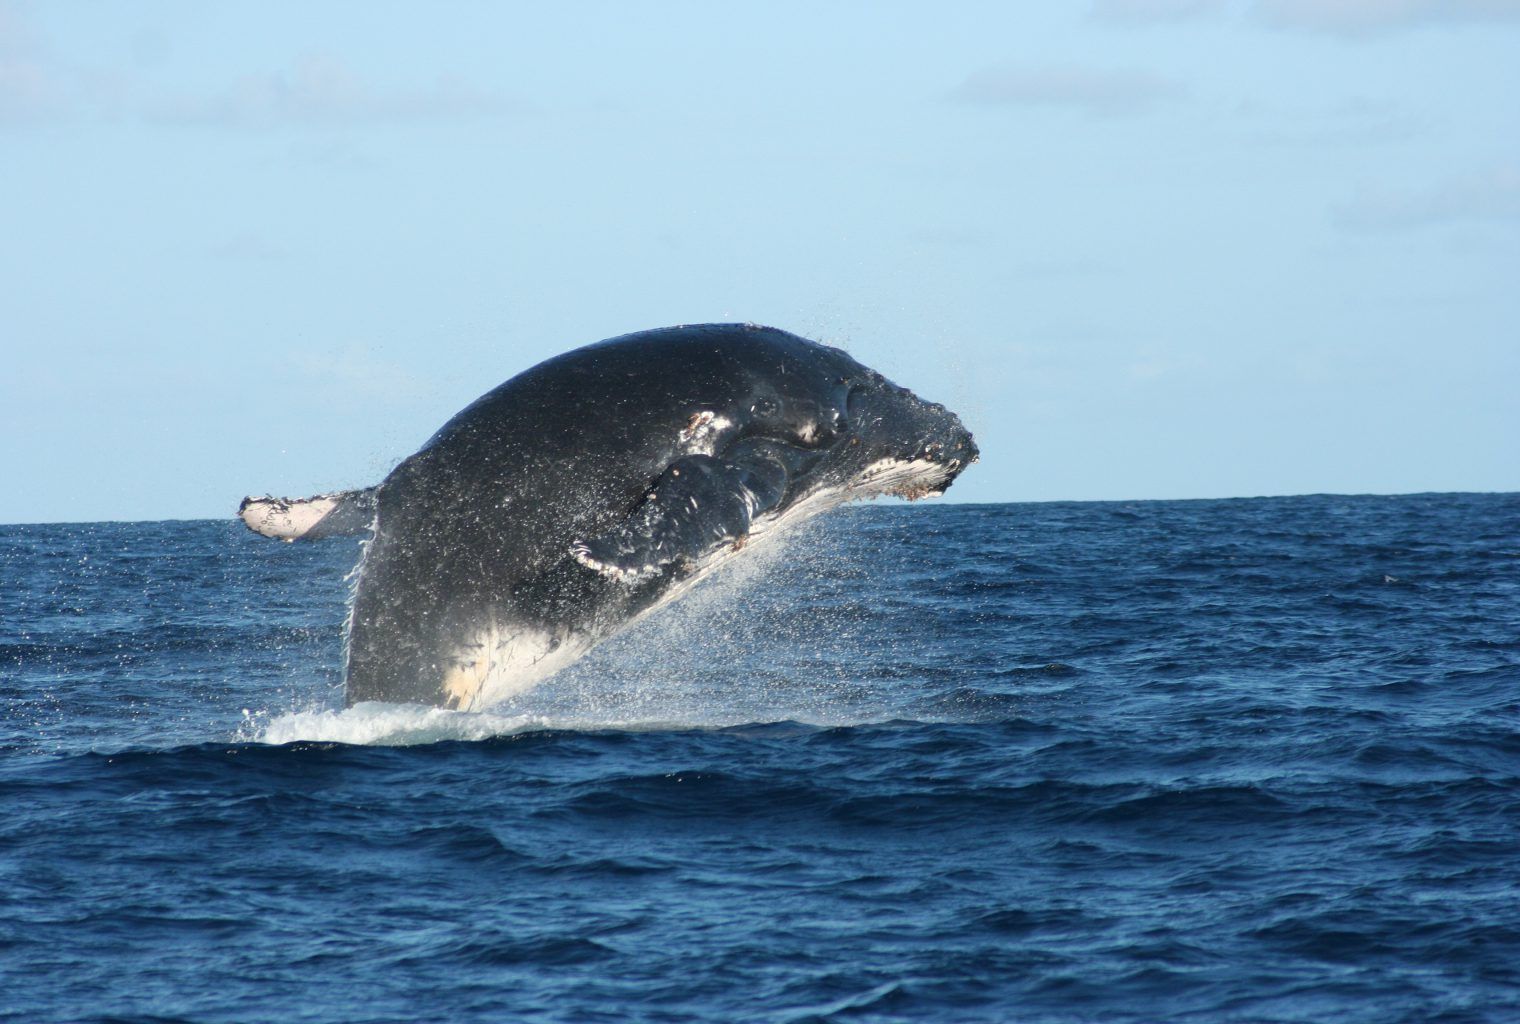 amazing whales journeys